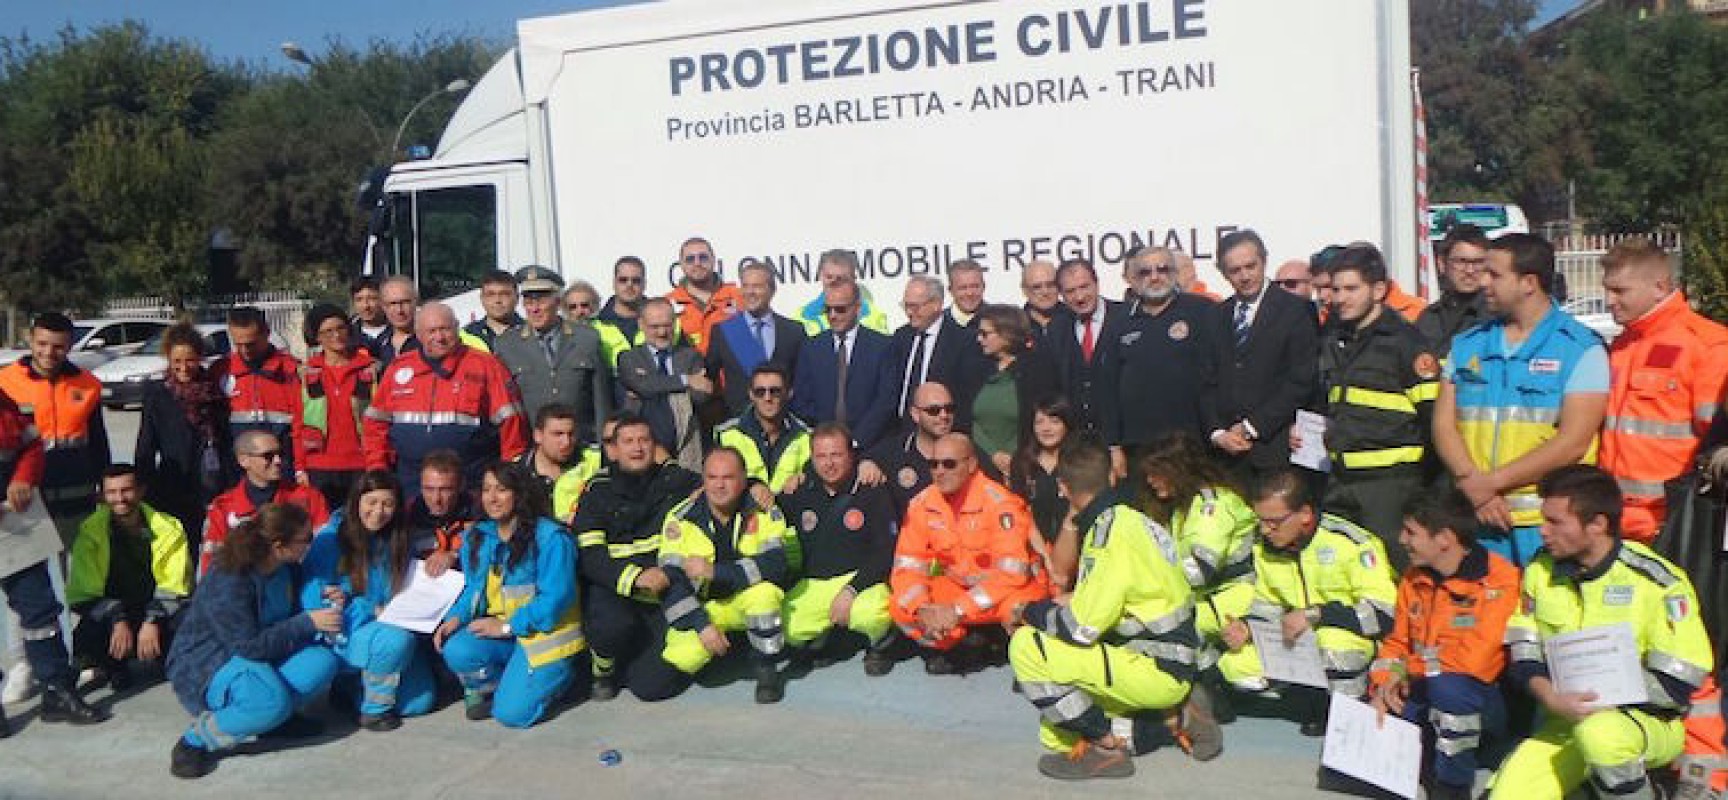 Protezione civile, il capo dipartimento Angelo Borrelli emana nuove disposizioni normative